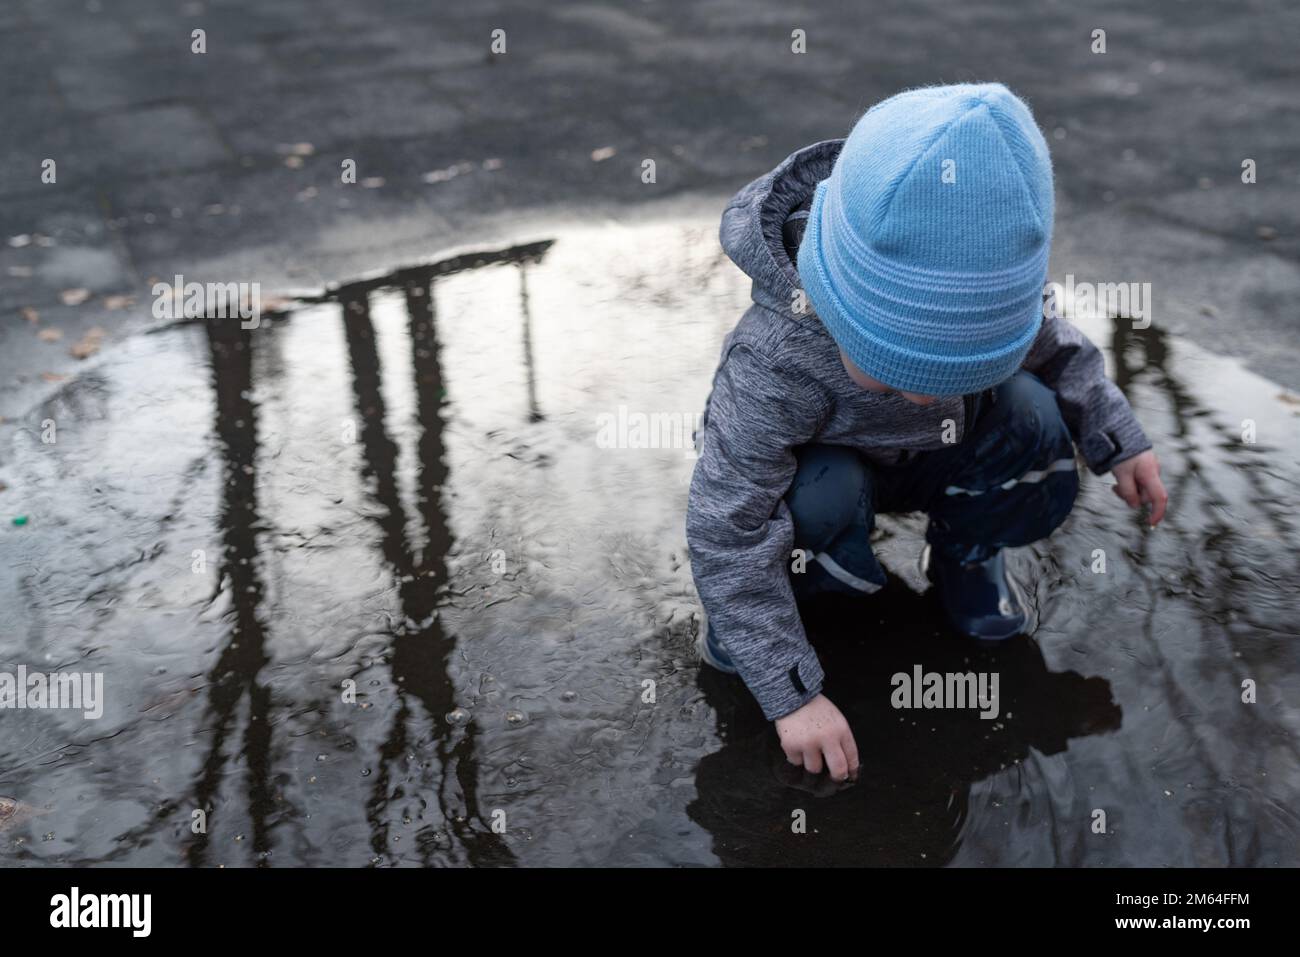 ragazzo di due anni con pantaloni e stivali da pioggia che gioca in una pozza d'acqua dopo la doccia a pioggia Foto Stock